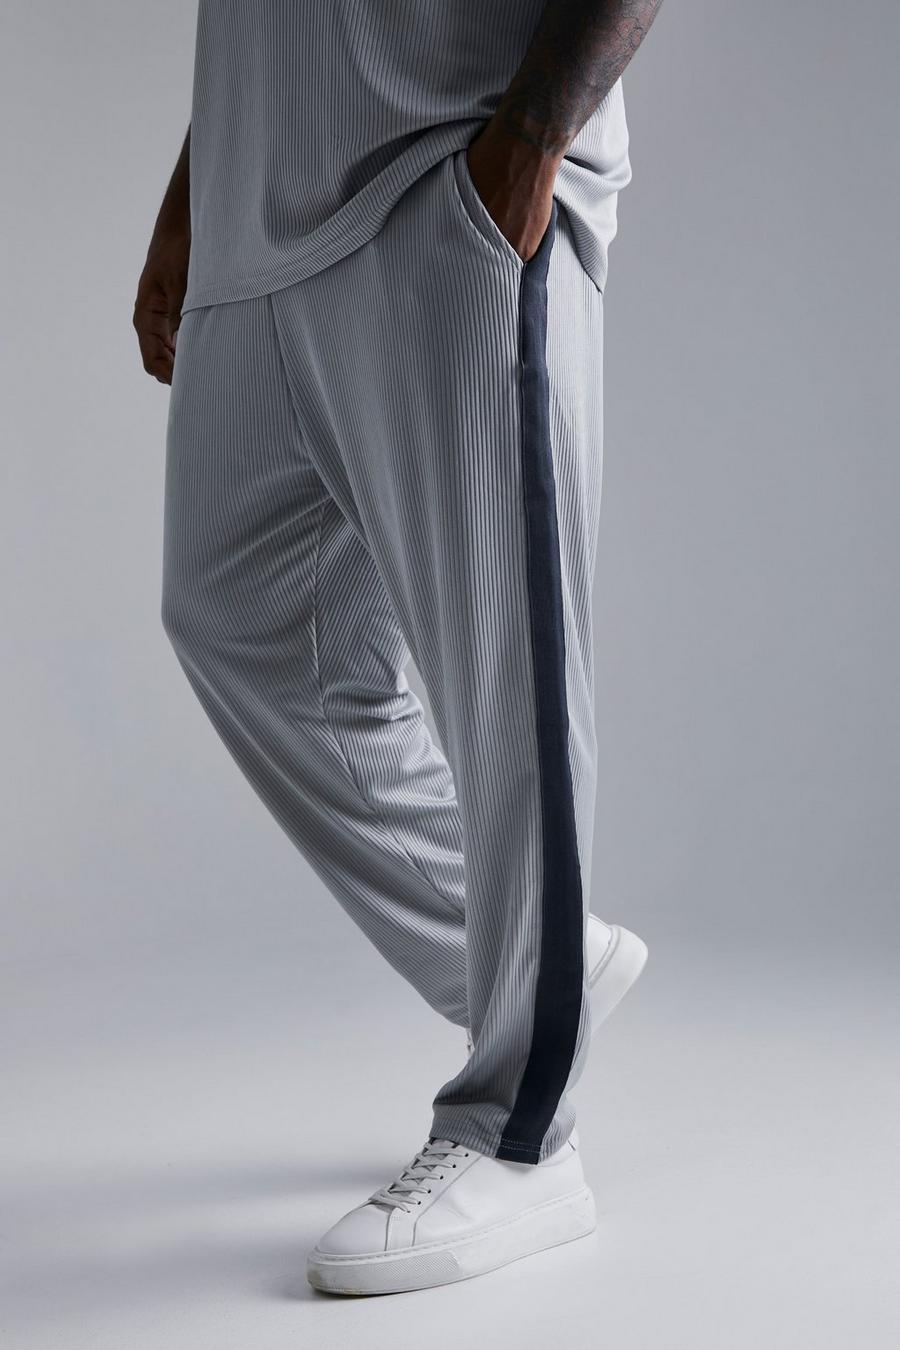 Pantaloni tuta Plus Size affusolati alla caviglia con pieghe e striscia laterale, Grey gris